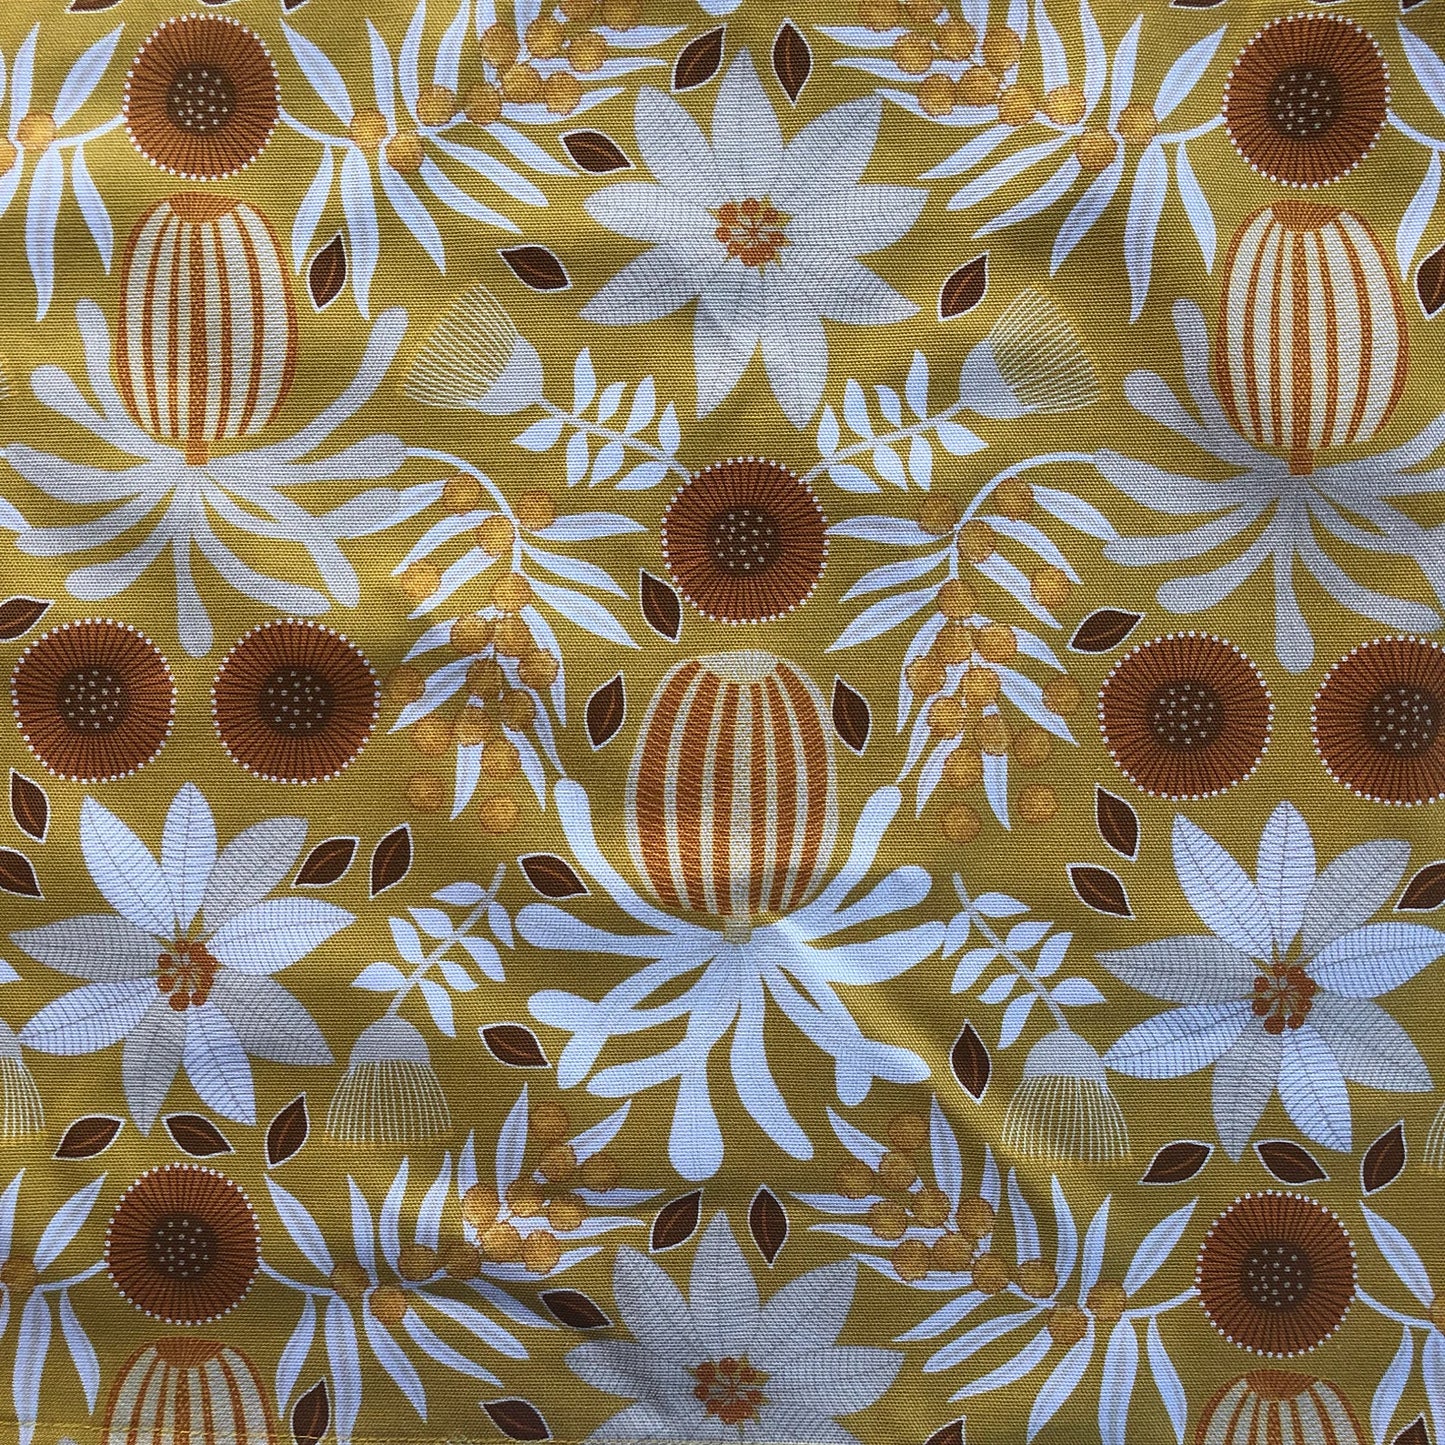 Jocelyn Proust Designs Tea Towel Mustard Banksia